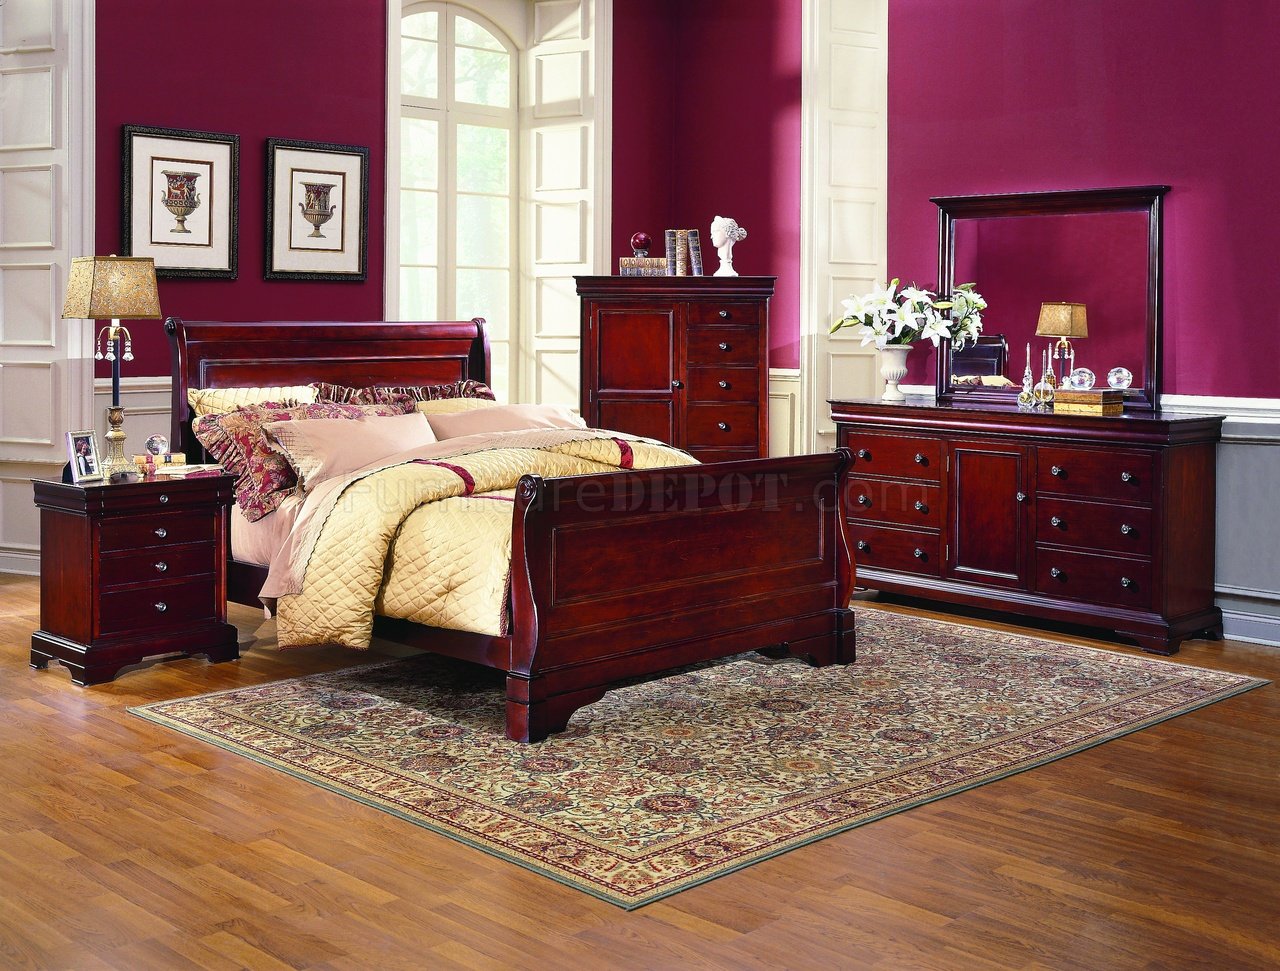 bentley bordeaux bedroom furniture